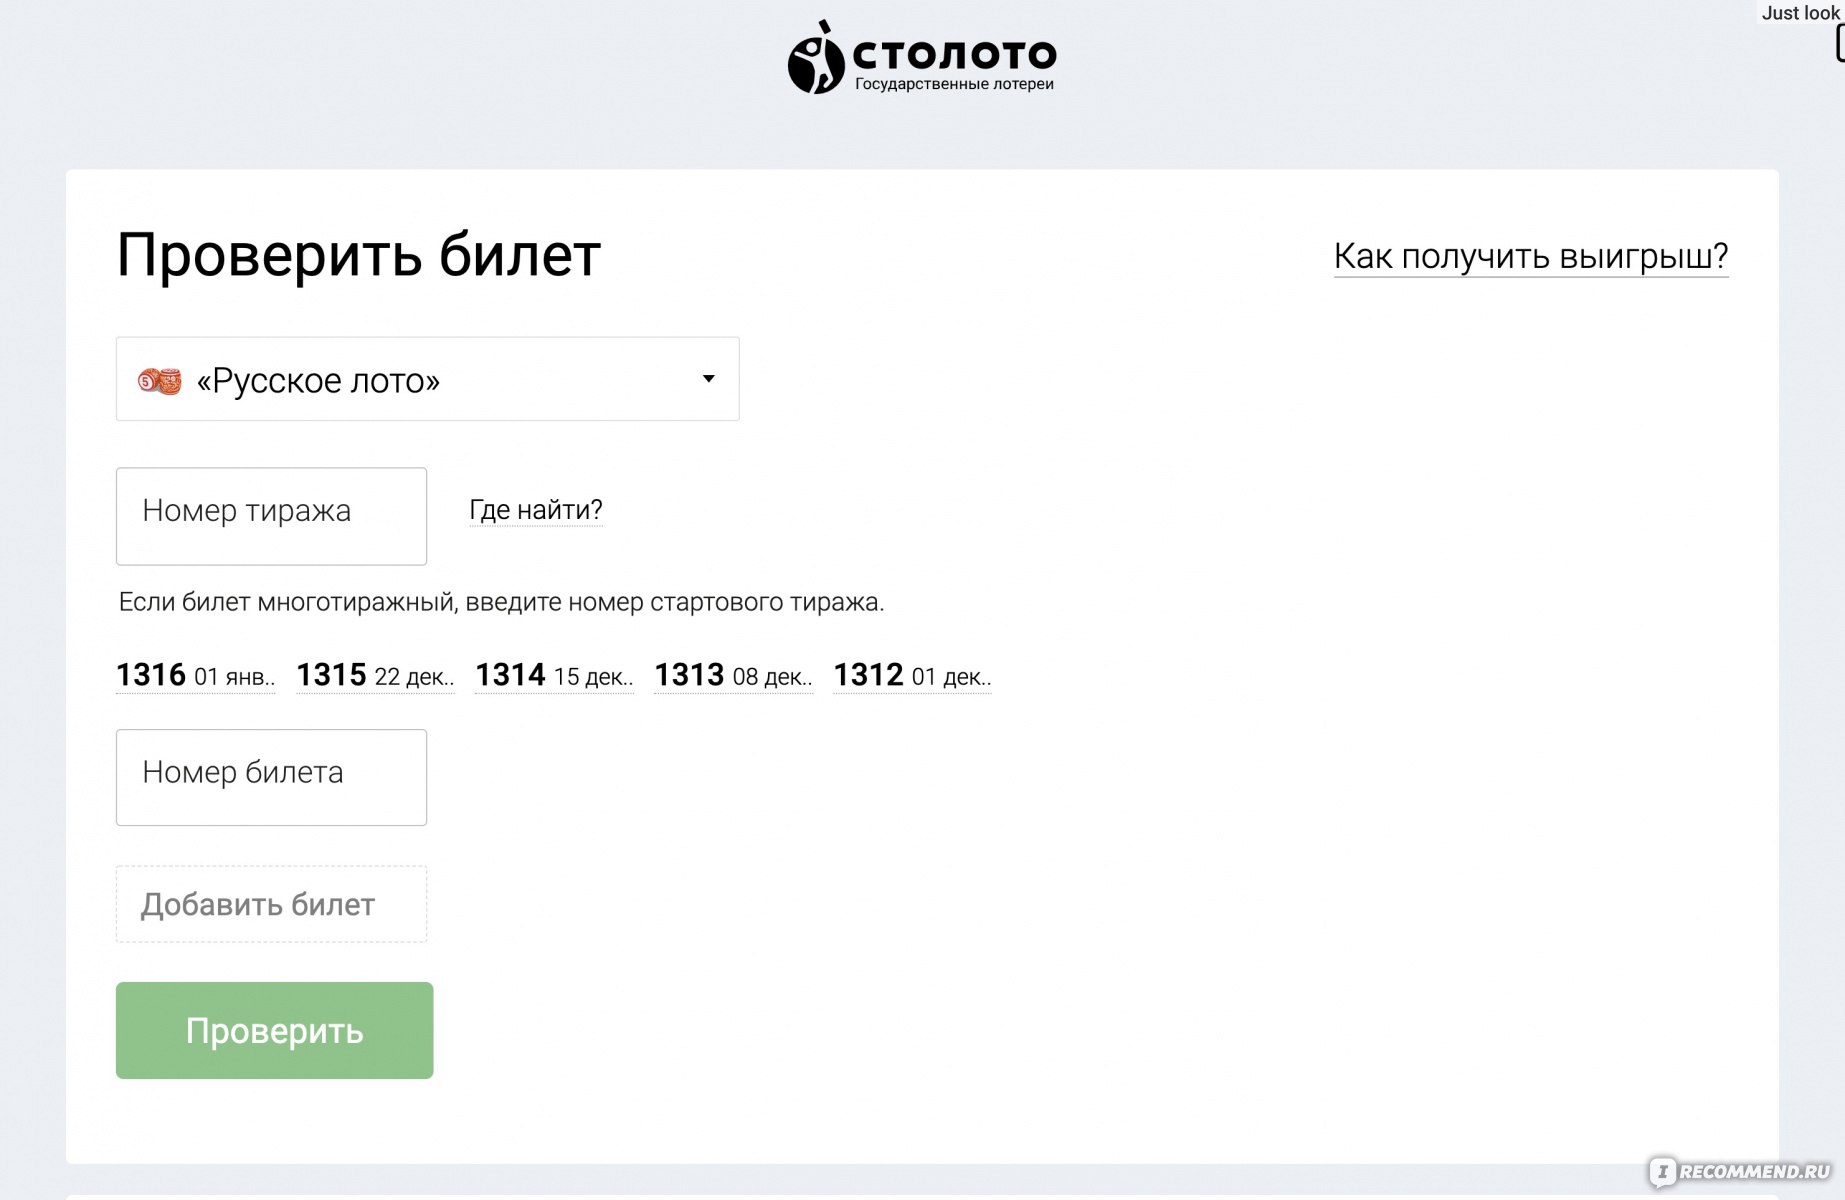 То лото ru официальный сайт проверить билет столото europa casino bonus